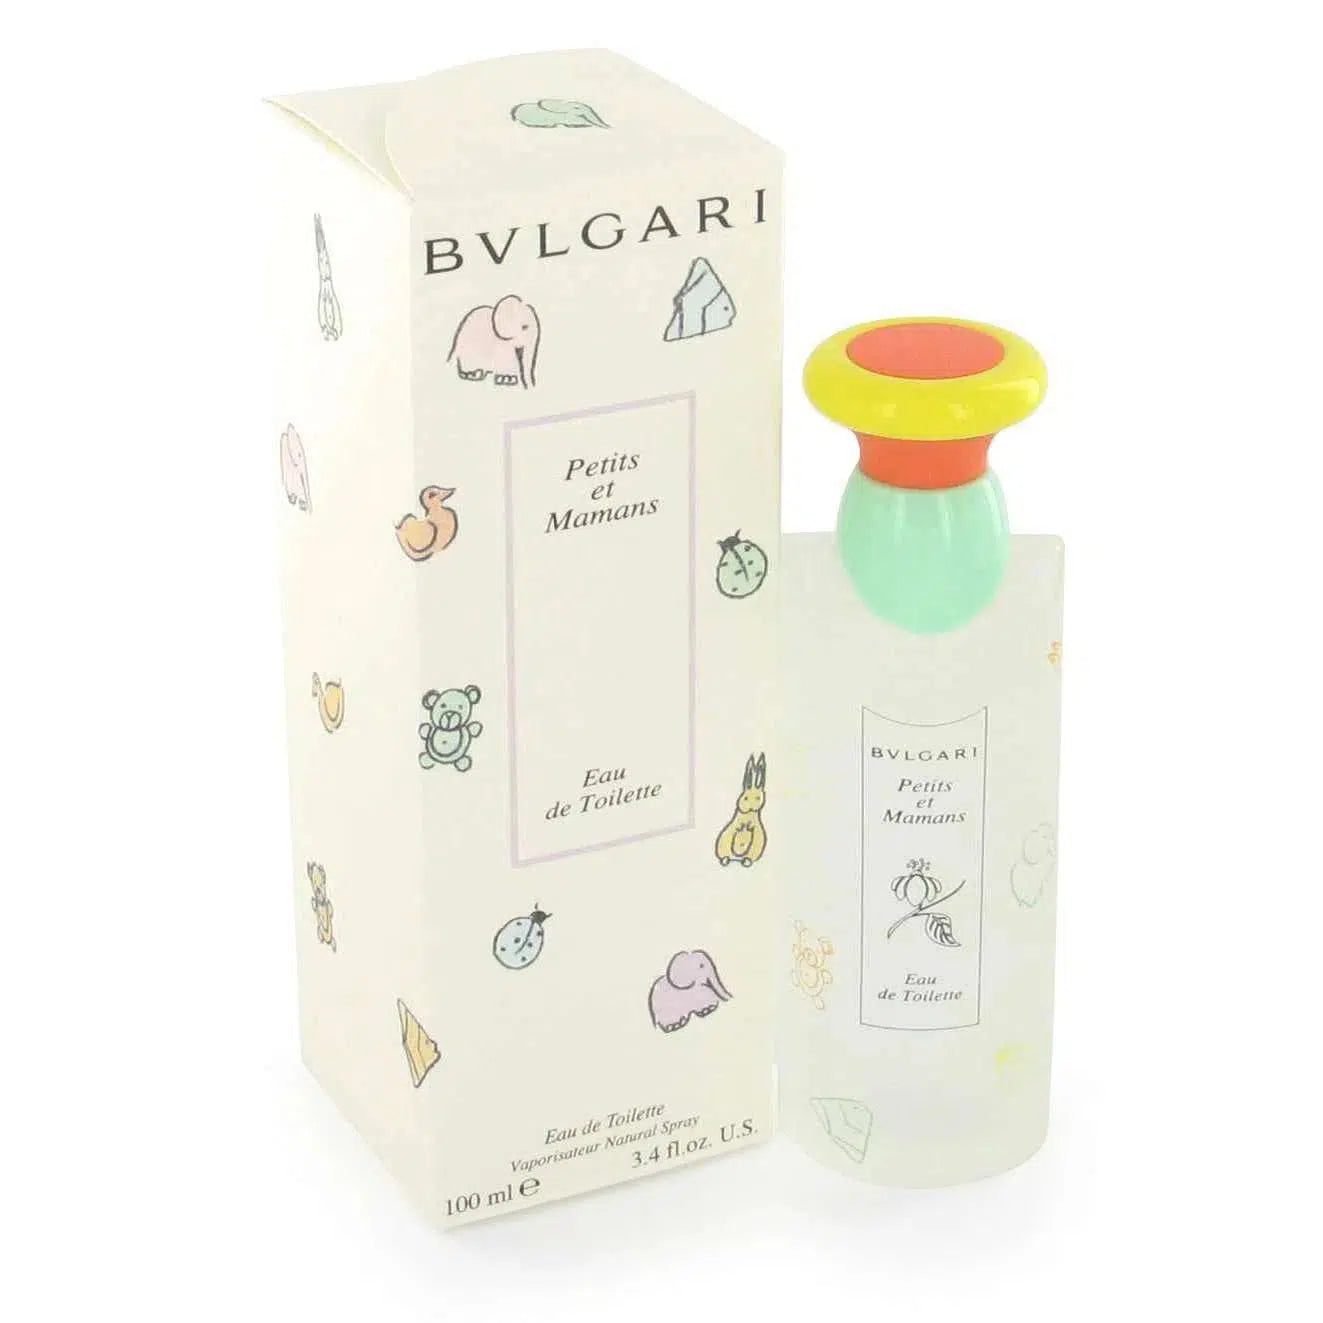 Bvlgari Petit Et Mamans 100ml - Perfume Philippines